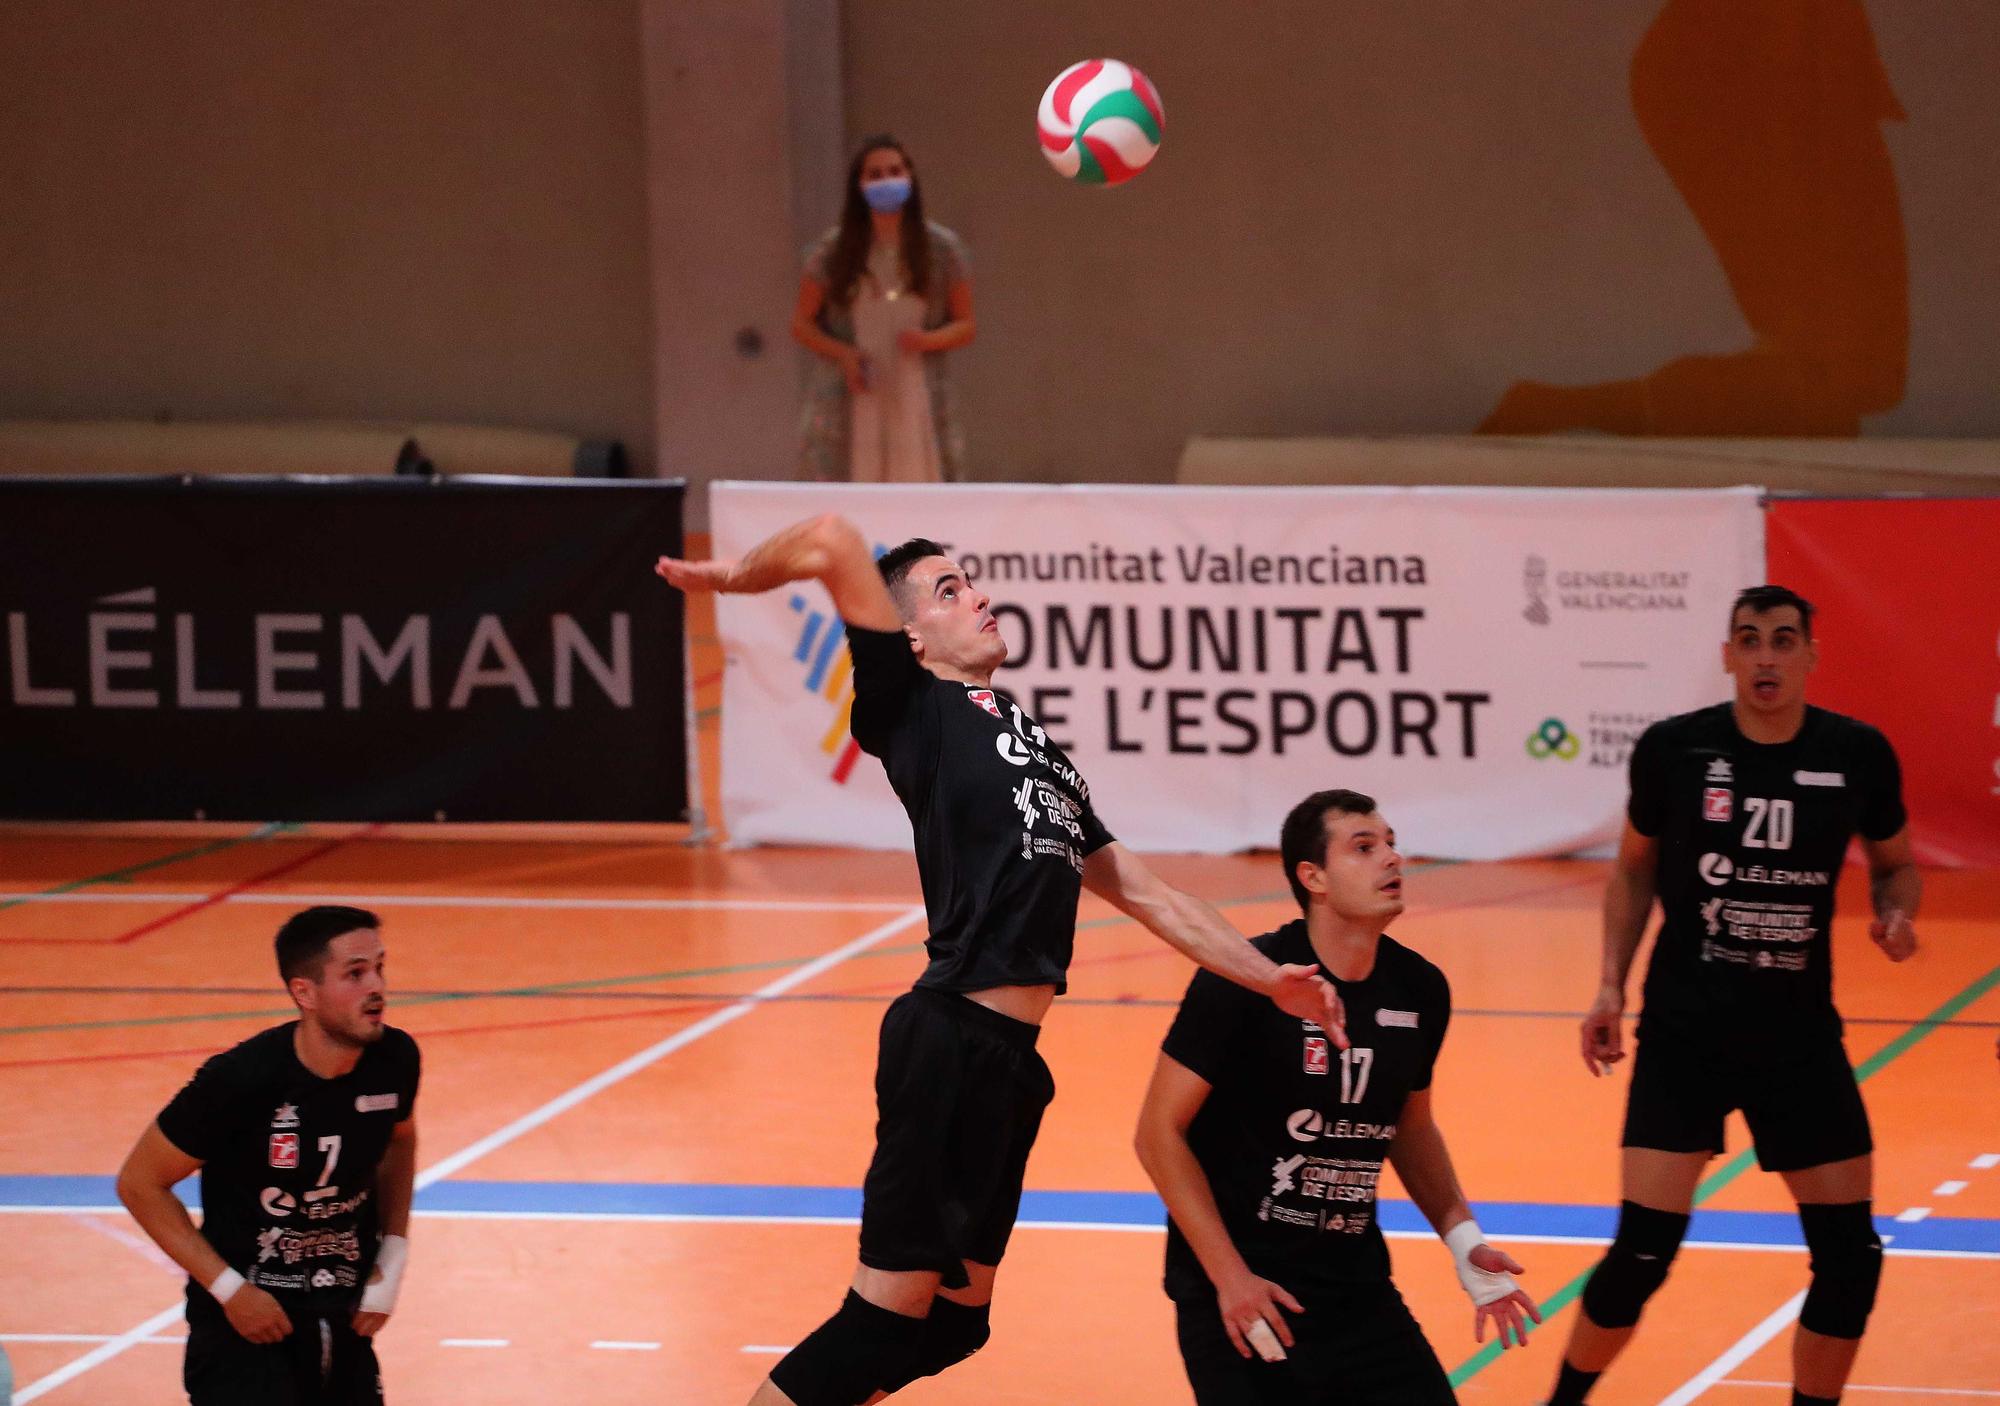 Partido de Voleibol entre Leleman Valencia Voleibol y el Teruel voleibol